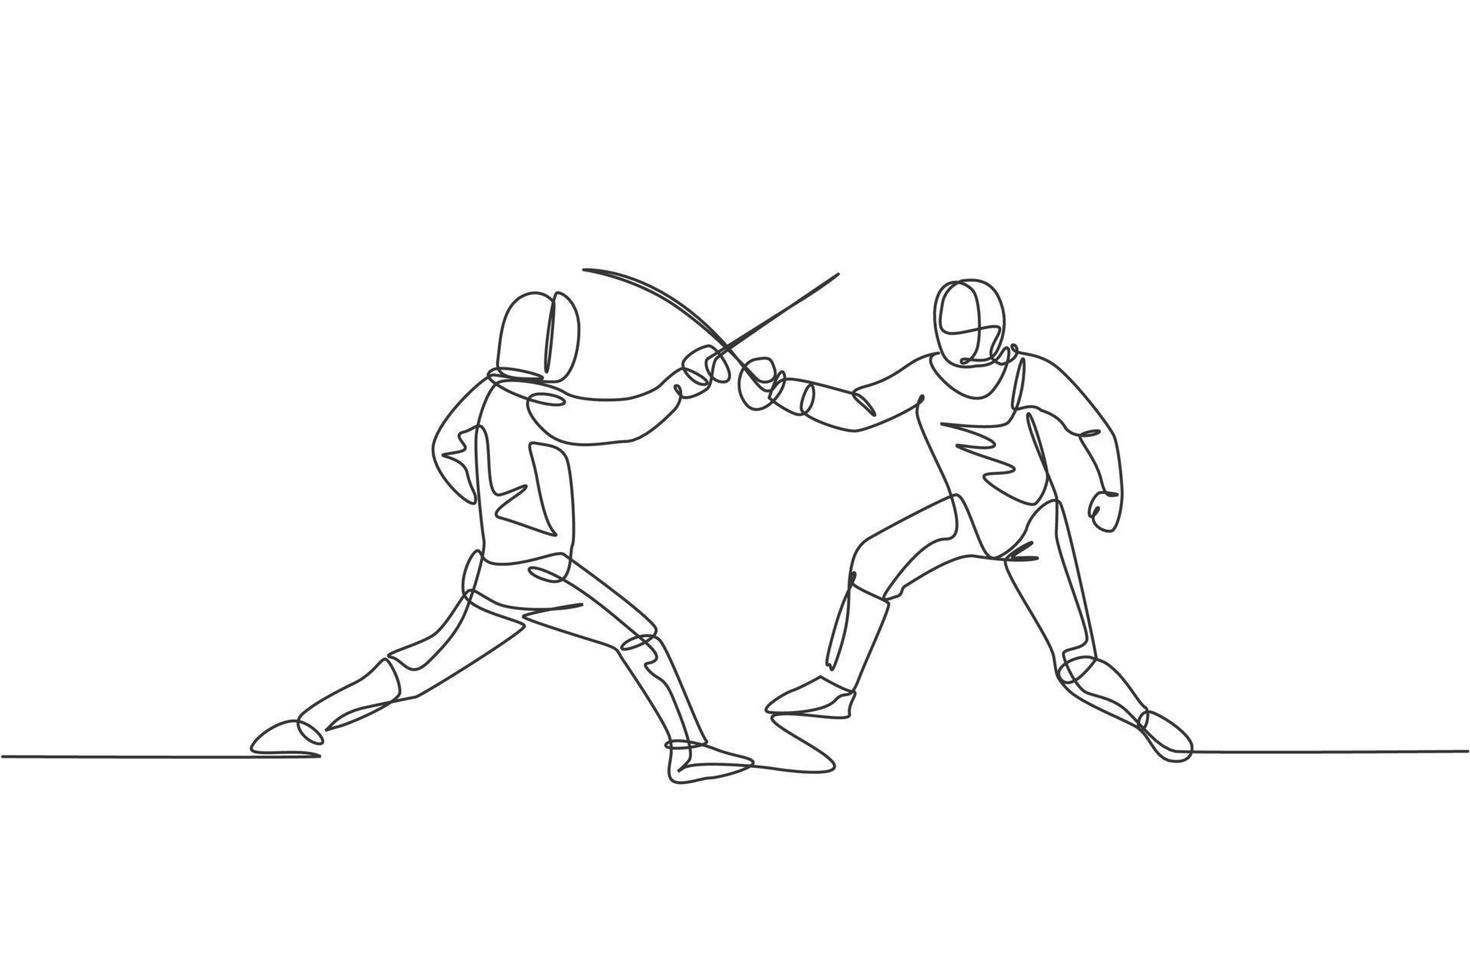 un dibujo de una sola línea de dos atletas de esgrimista en traje de esgrima ejerciendo movimiento en la ilustración de vector de arena deportiva. concepto de deporte combativo y de lucha. diseño moderno de dibujo de línea continua